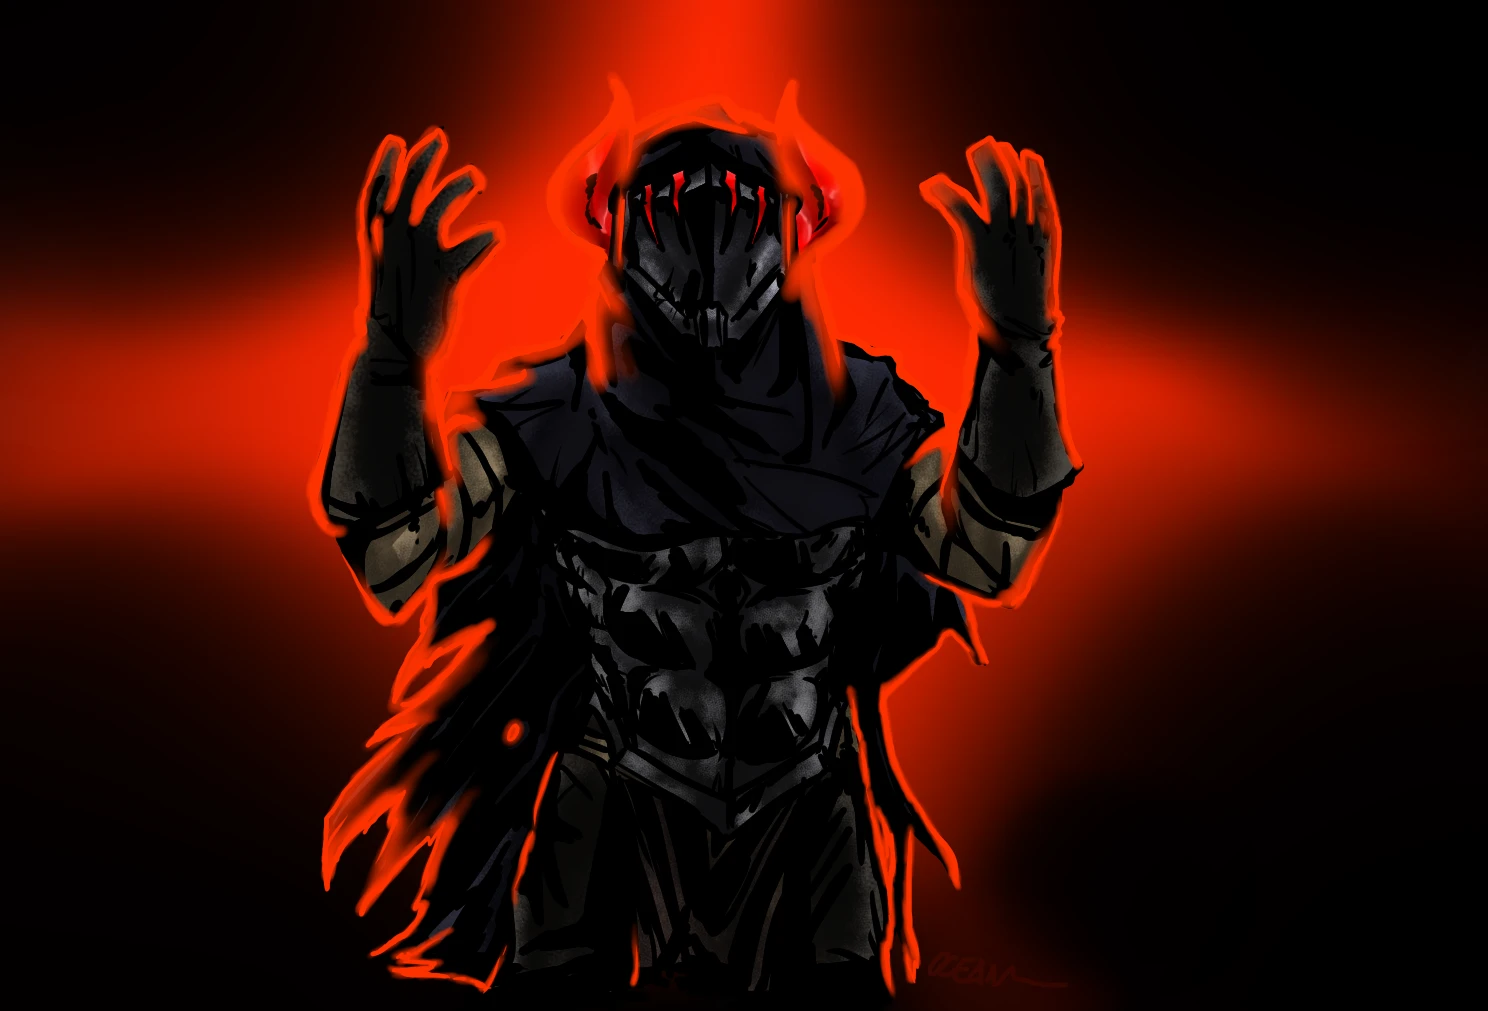 nexus mod manager darkest dungeon support github